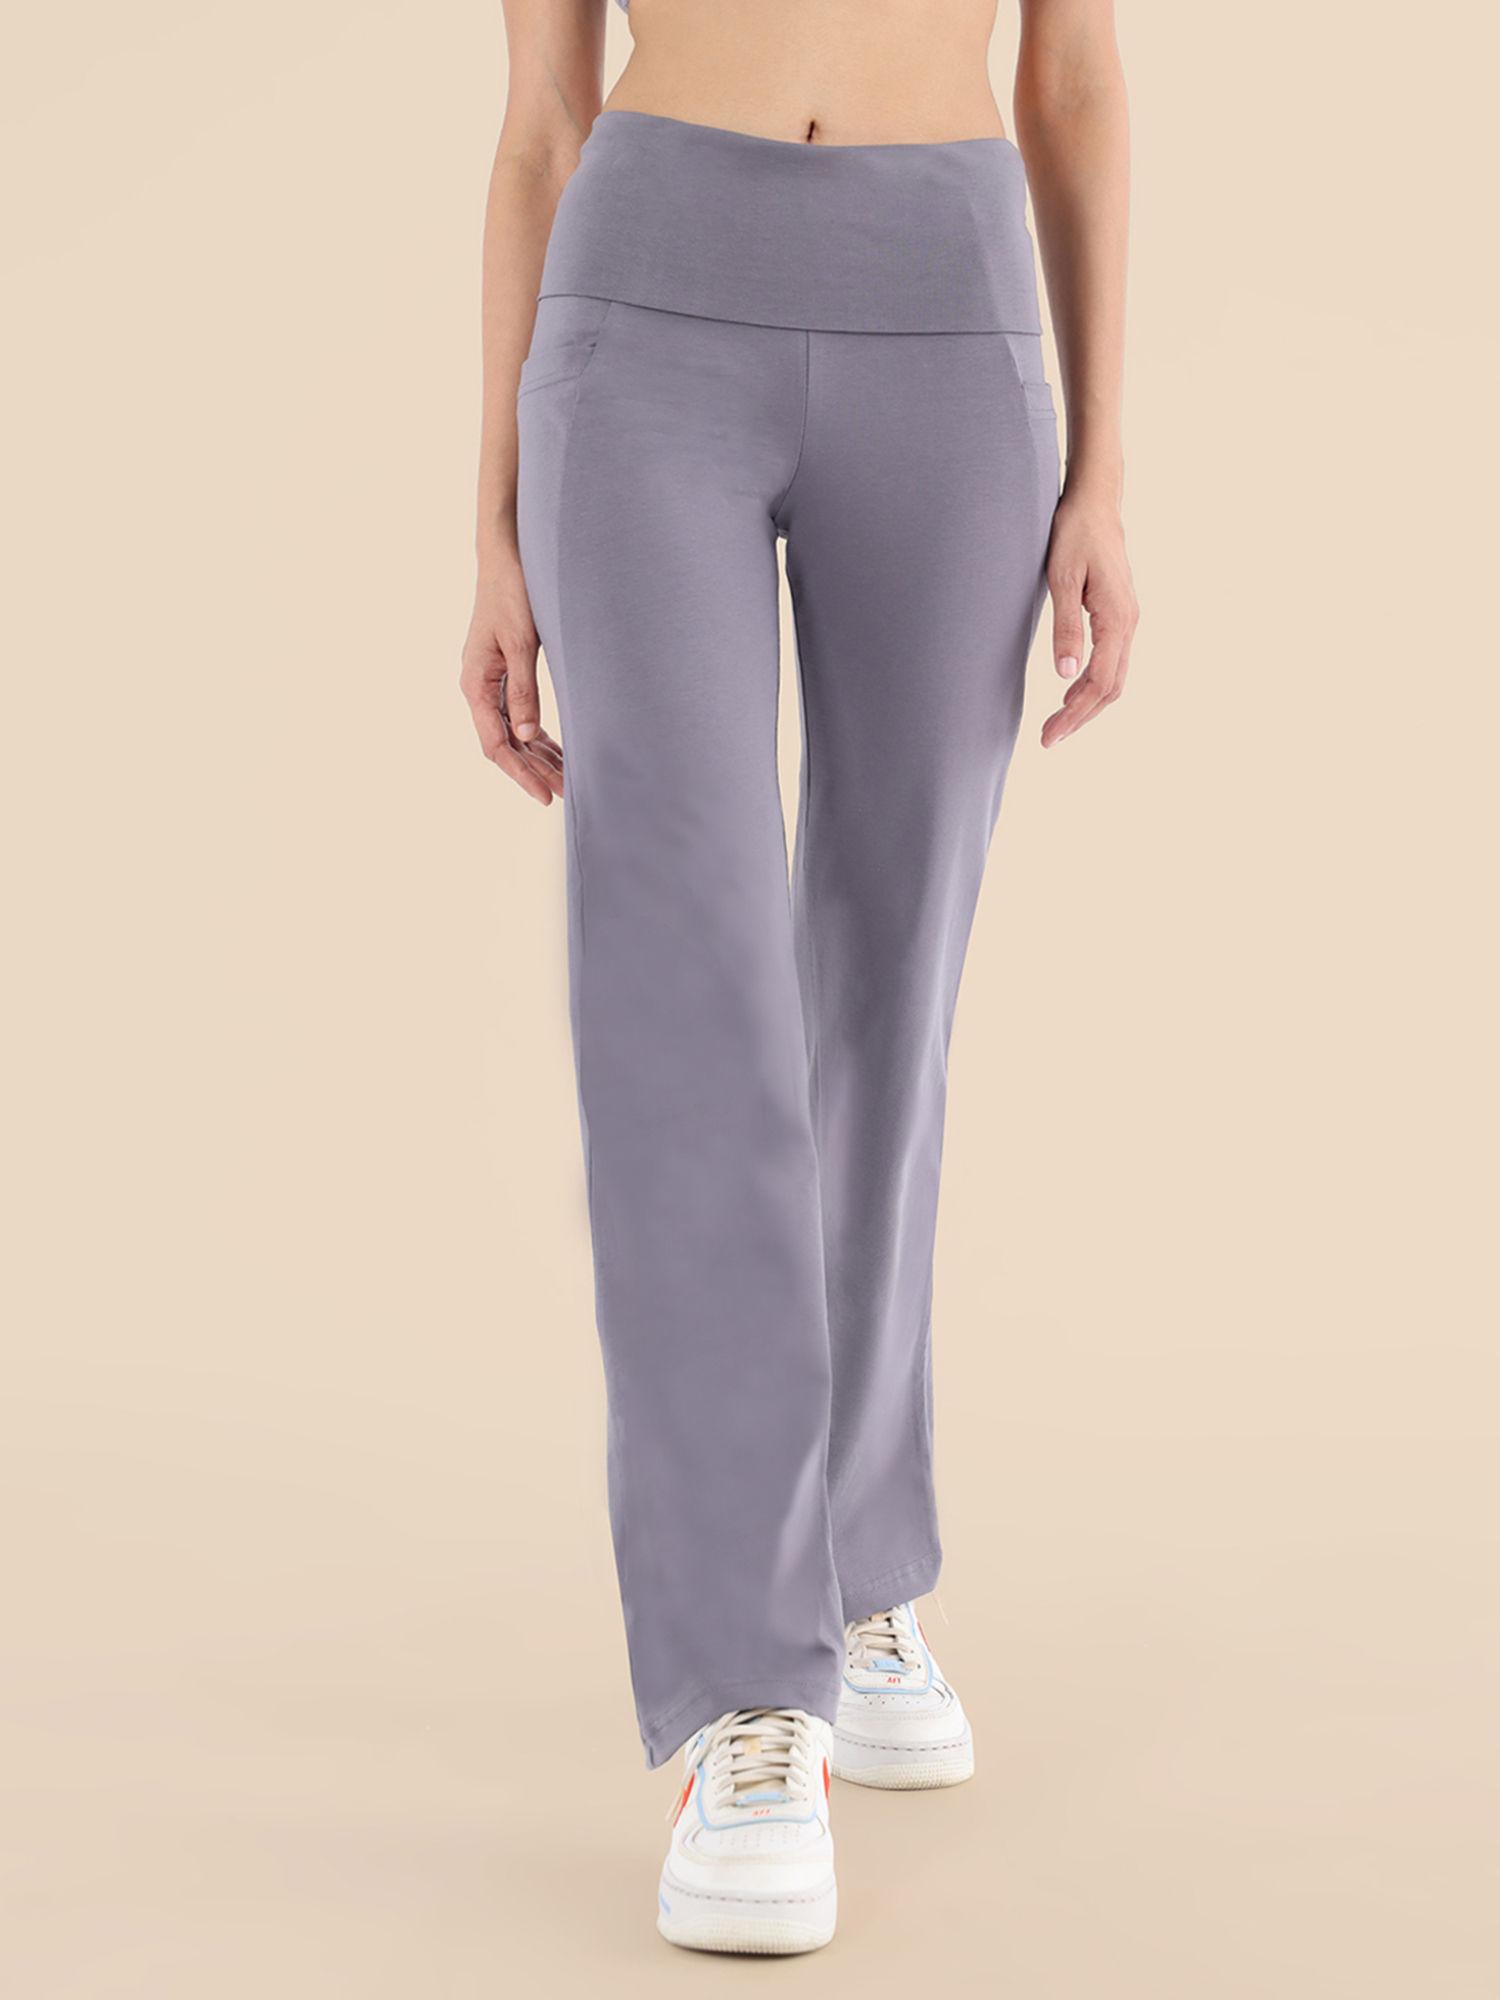 yoga pants grey